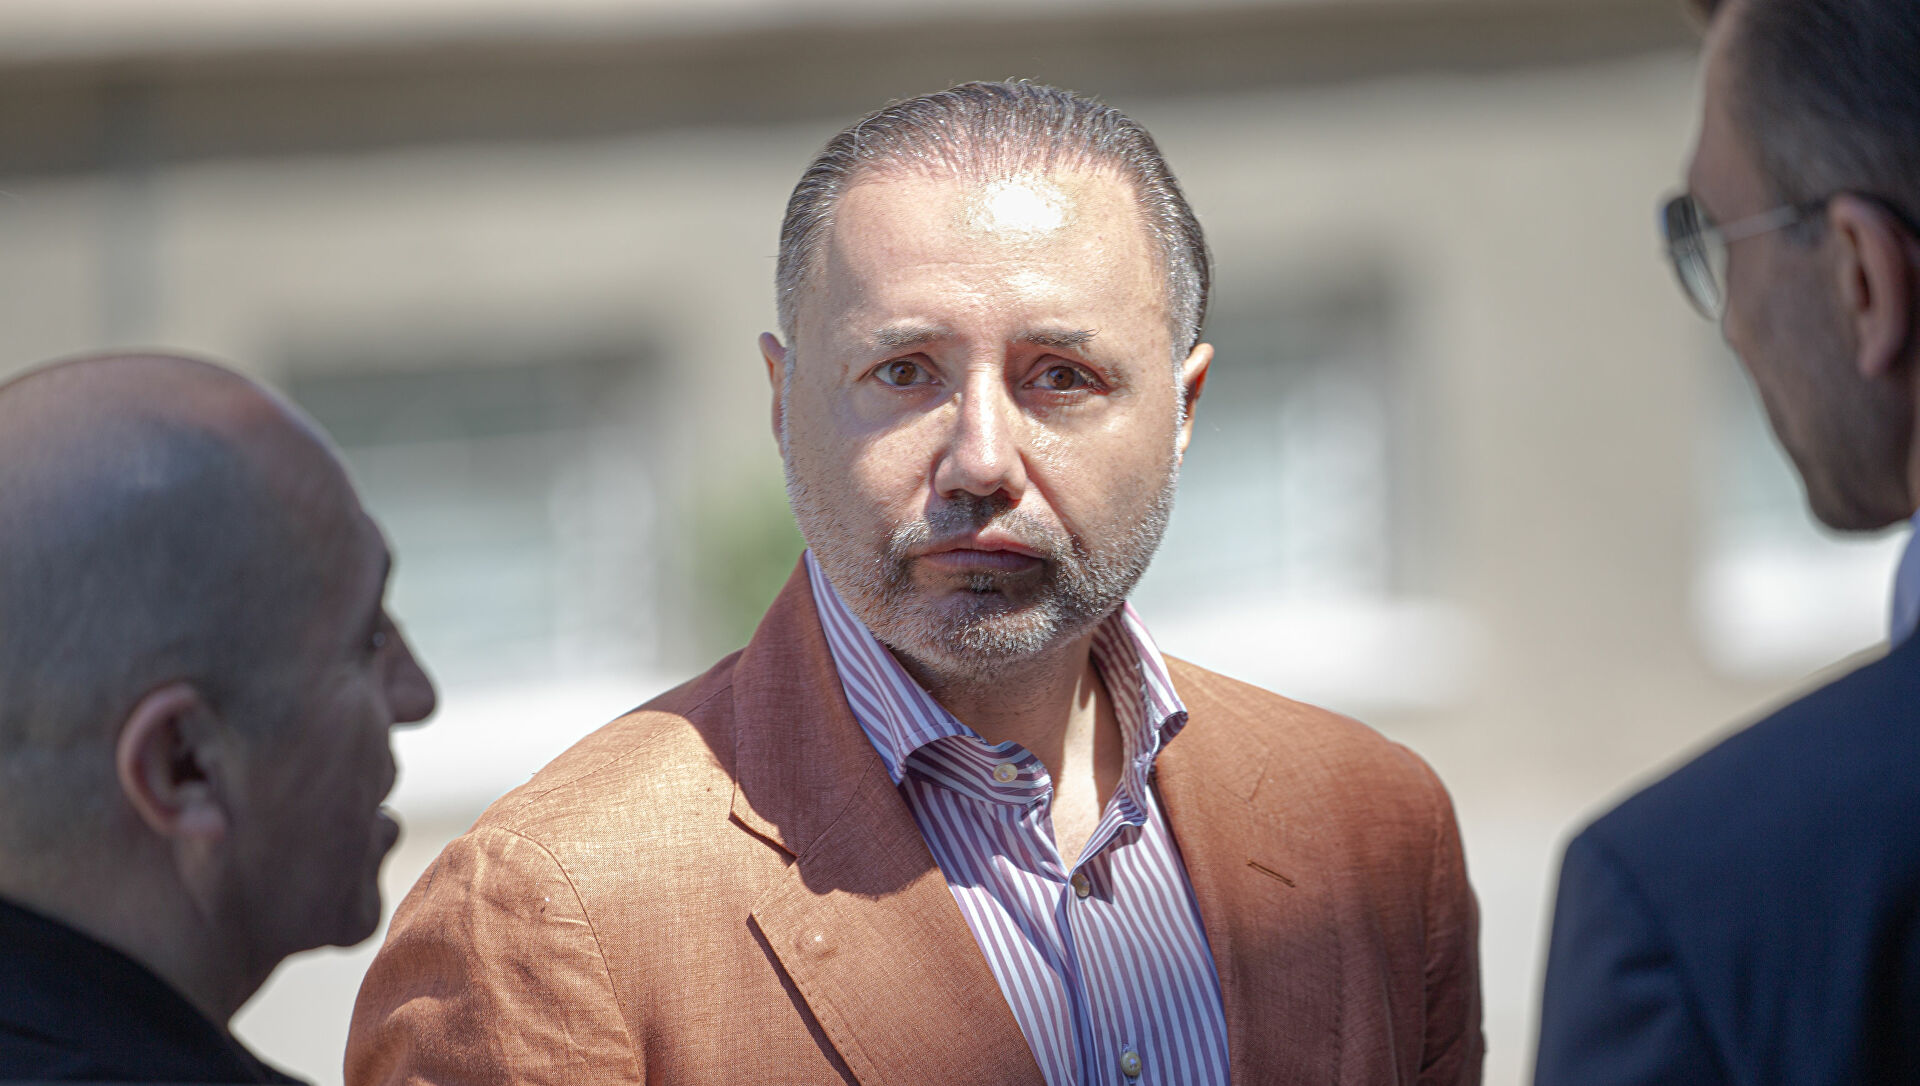 Fostul deputat român, Cristian Rizea, condamnat pentru corupţie în statul vecin, a fost extrădat în această seară în România. Rizea va fi dus direct în penitenciar, anunță autoritățile române